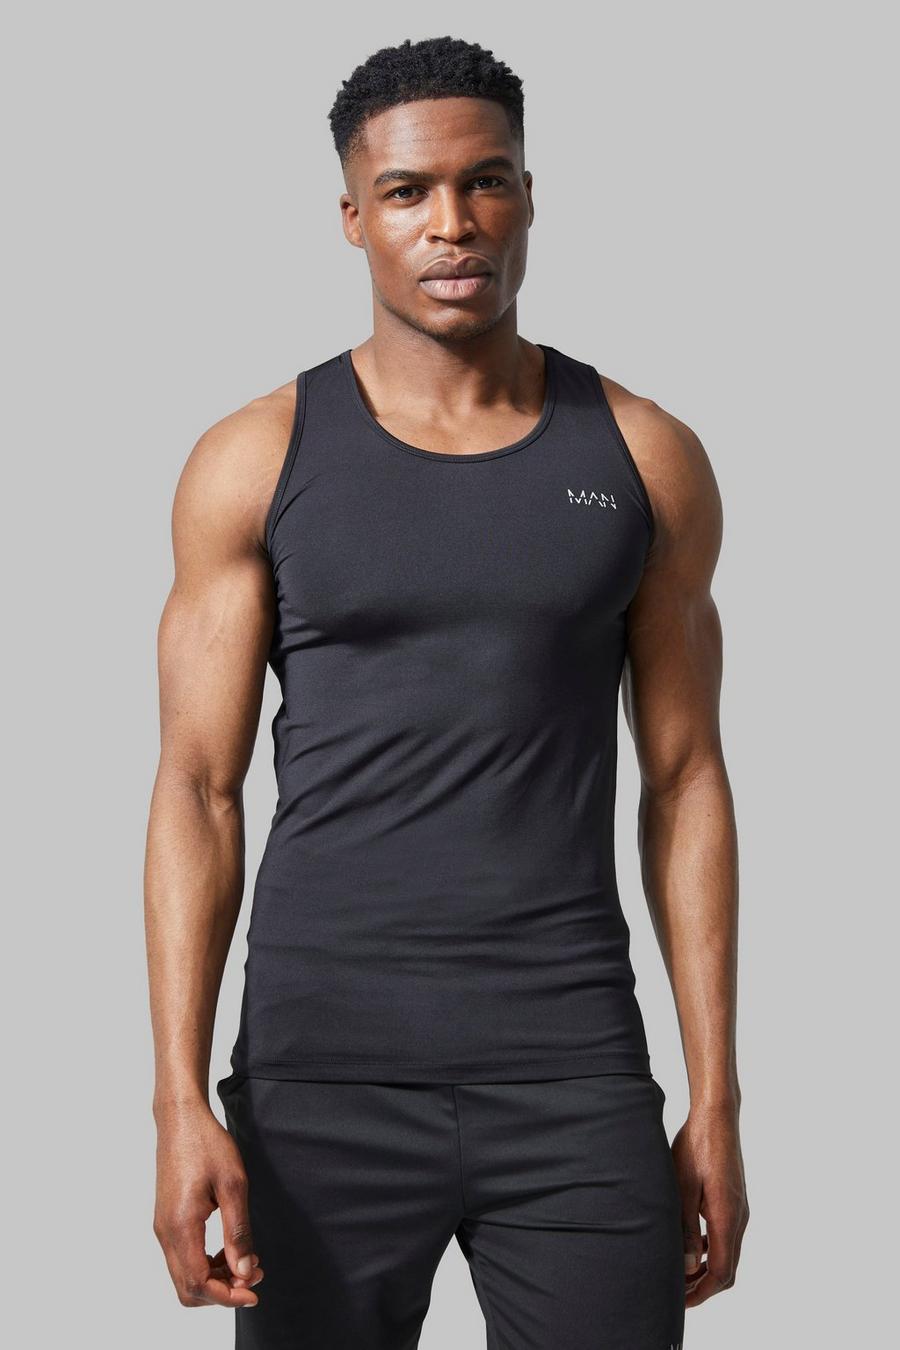 Black Man Active Muscle Fit Performance Vest